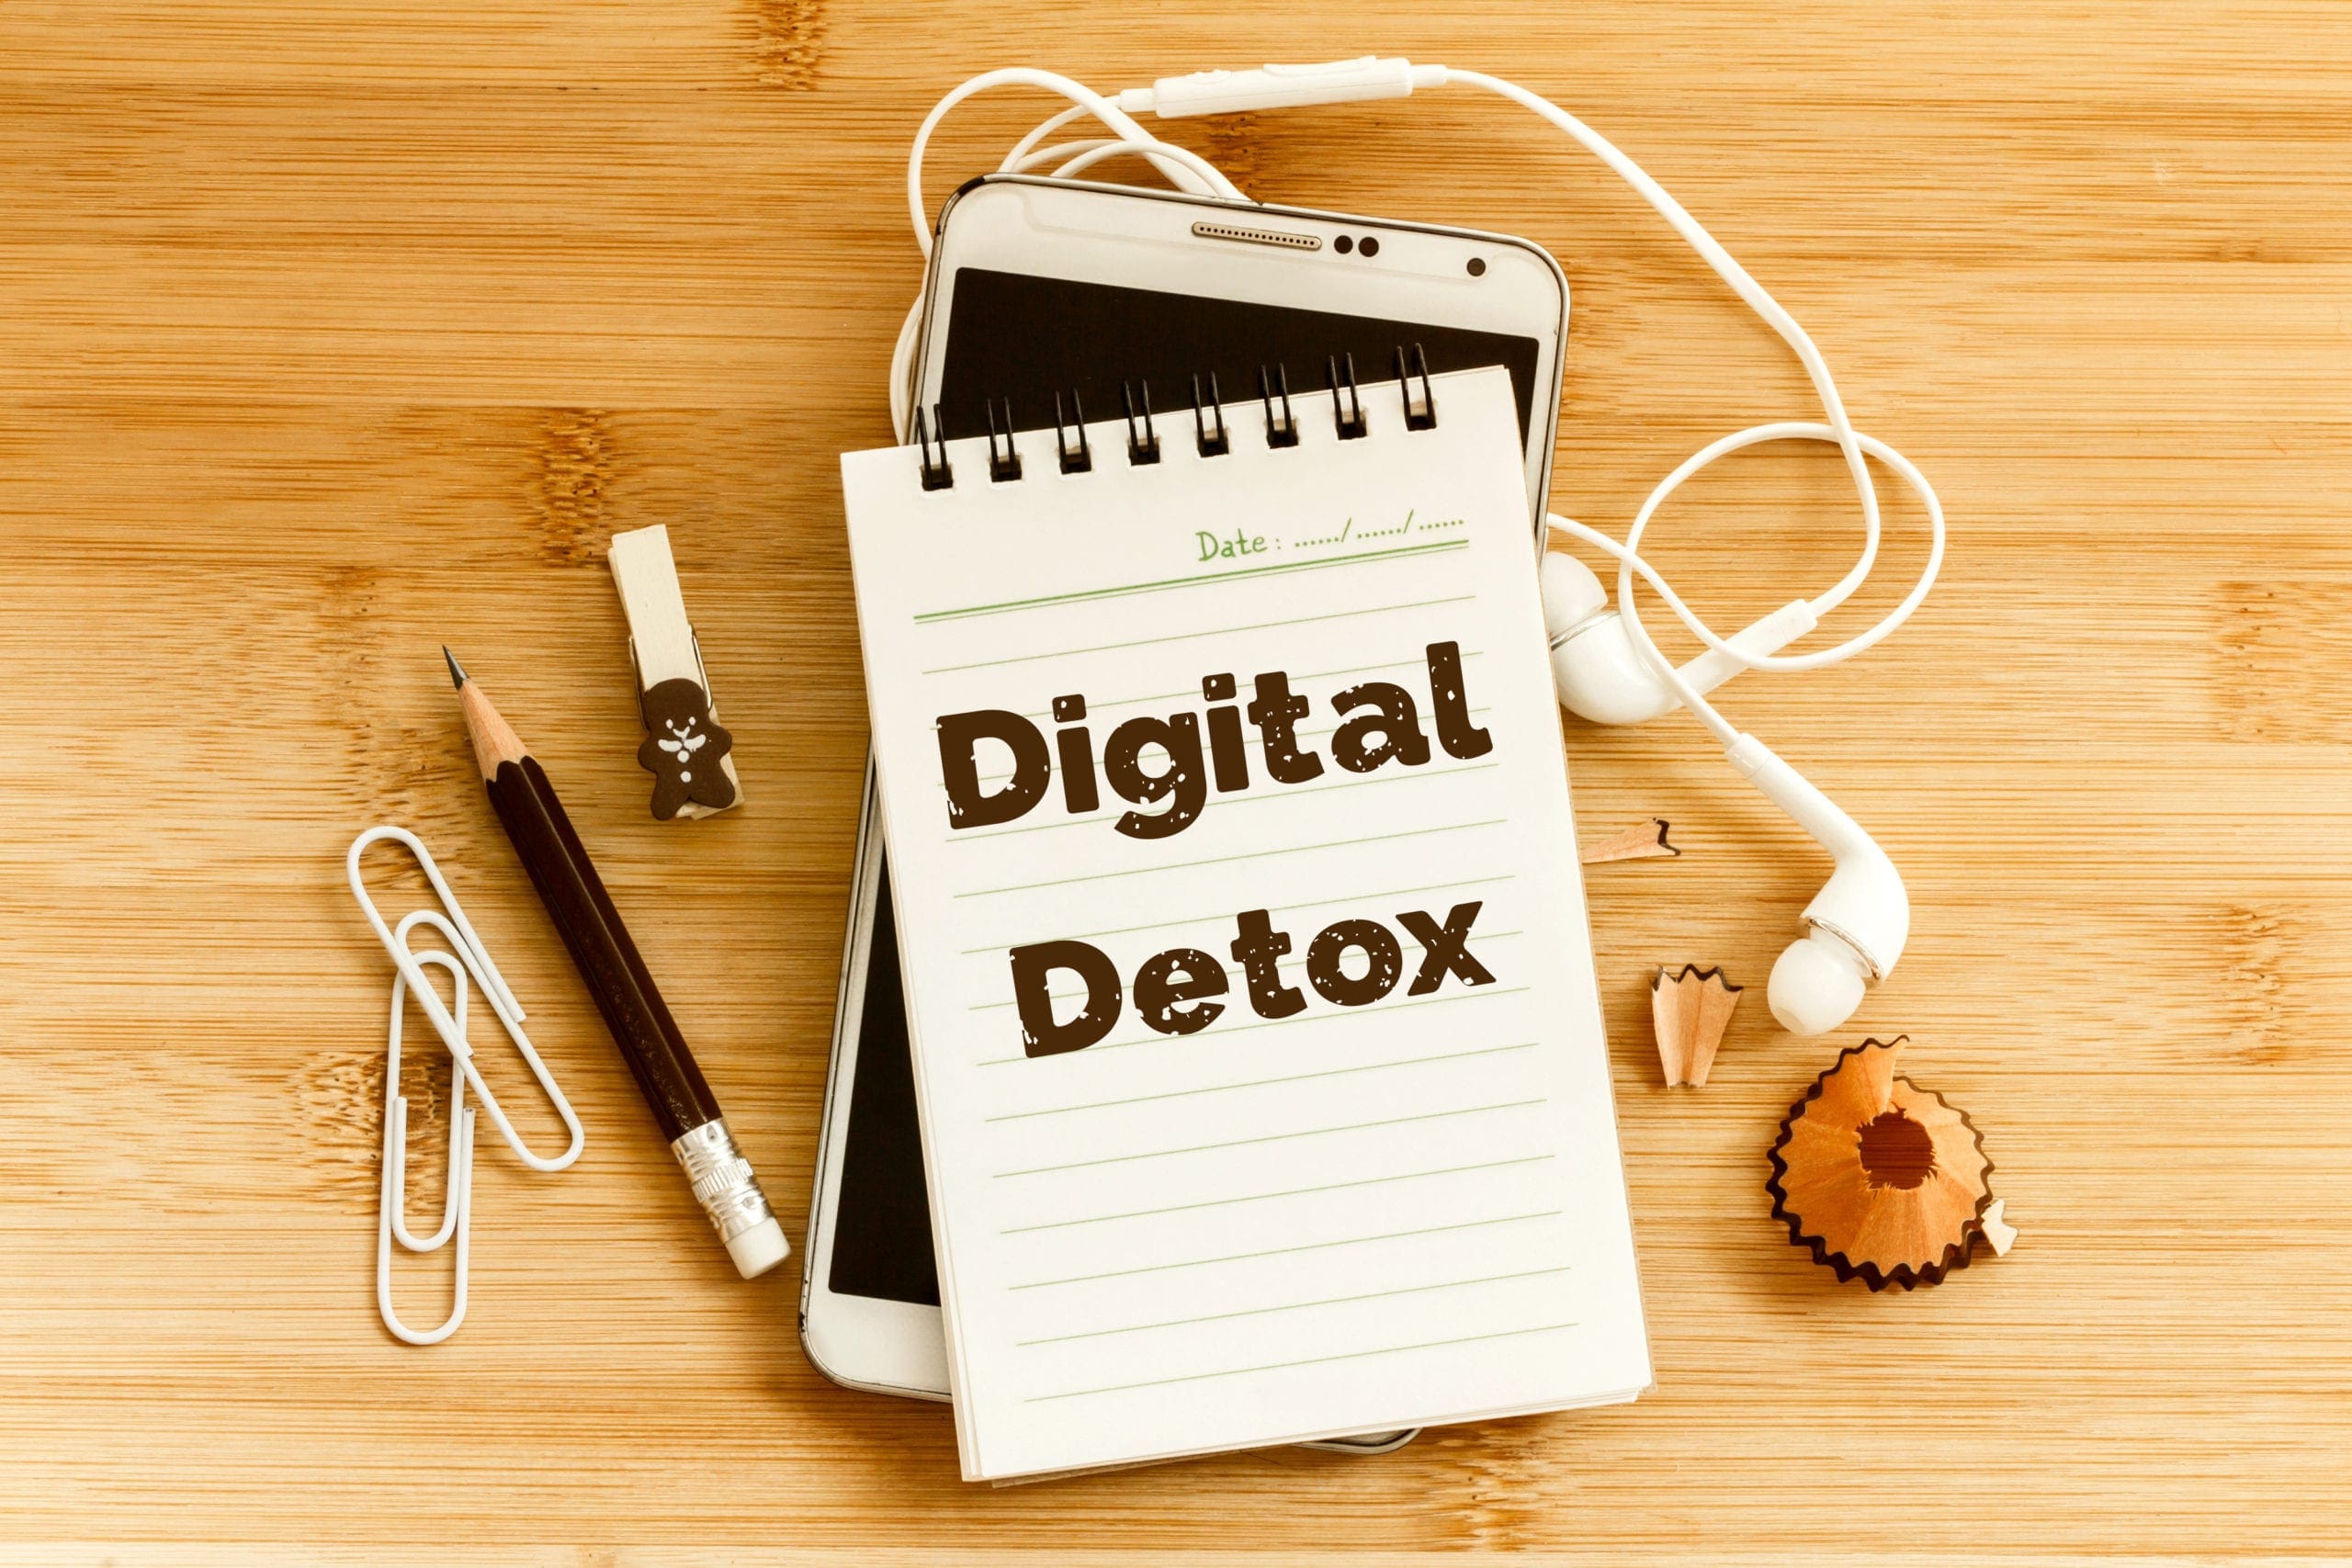 Time for a digital detox?